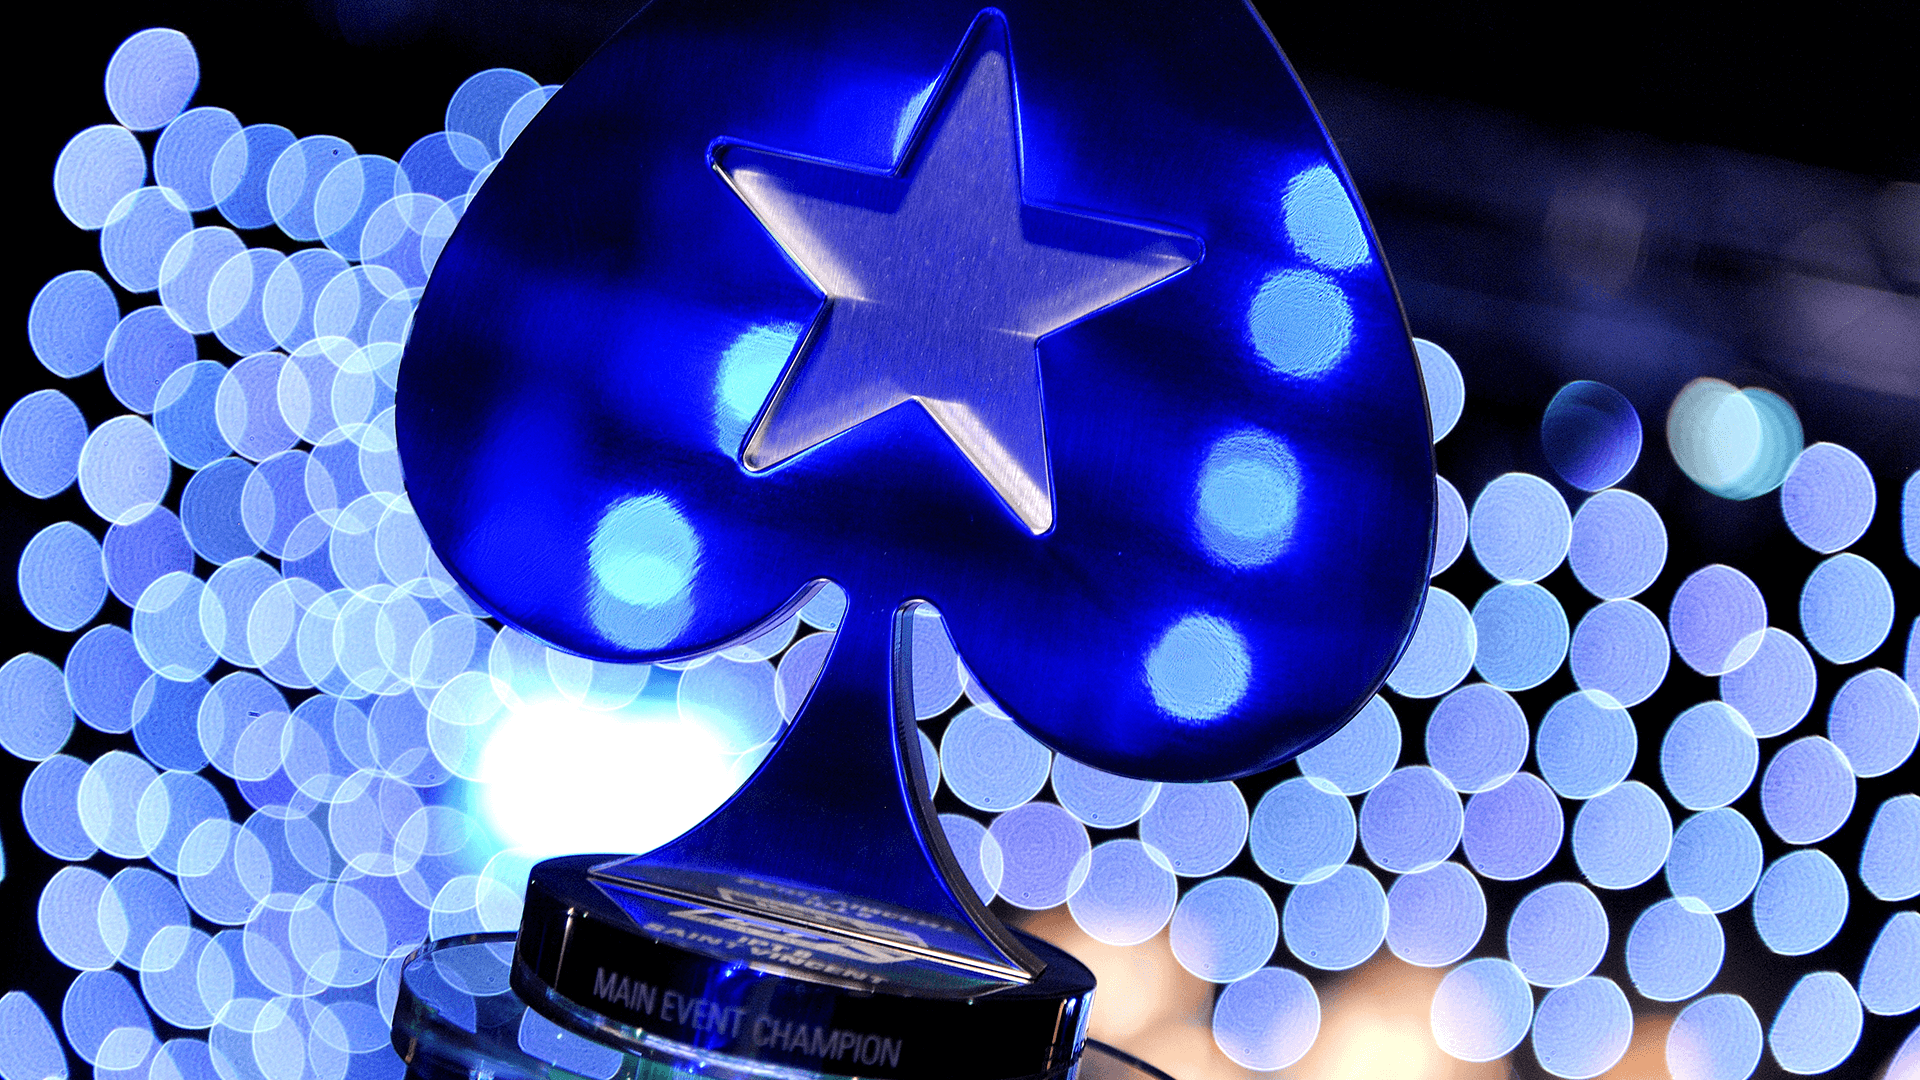 PokerStars Trophy